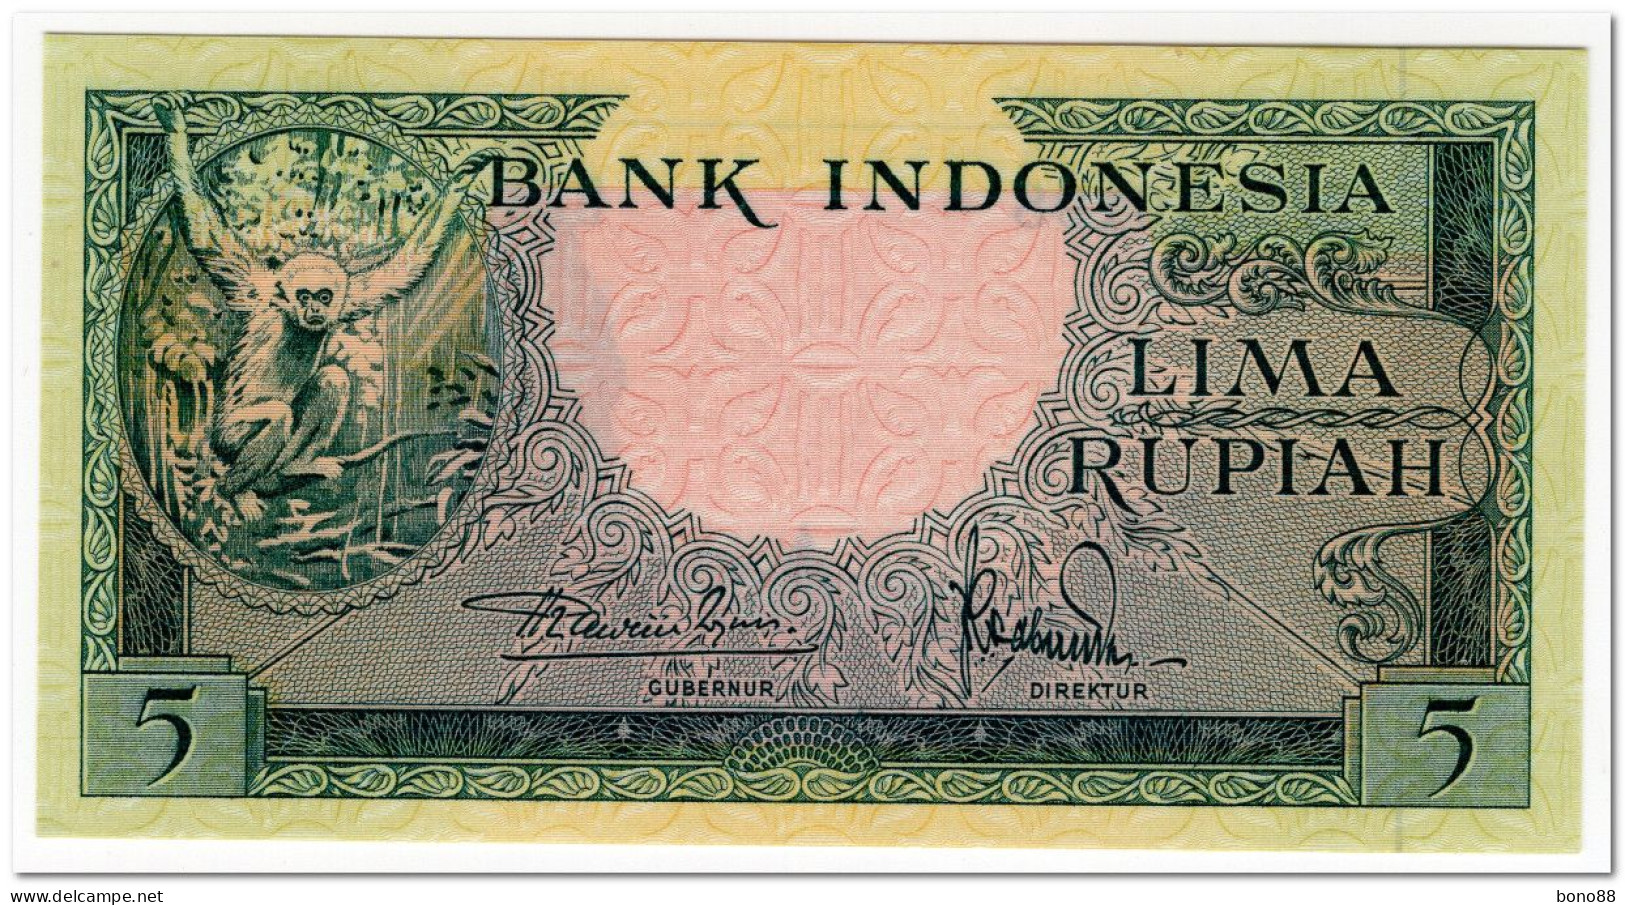 INDONESIA,5 RUPIAH,1957,P.49,UNC - Indonesia